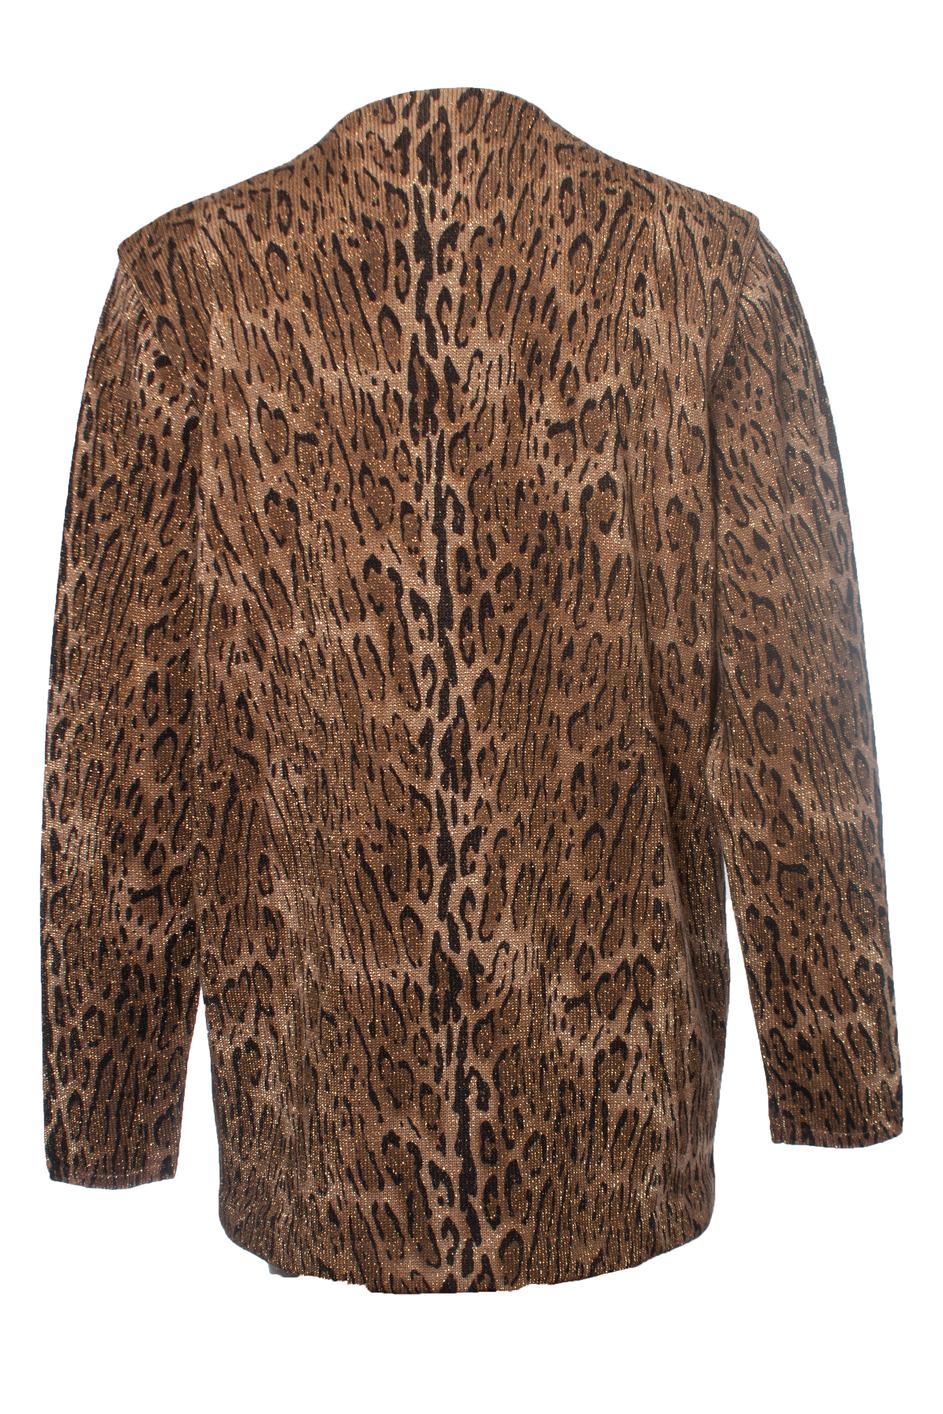 Saint Laurent Strickjacke aus laméfarbener Wolle mit Leopardenmuster (Braun) im Angebot